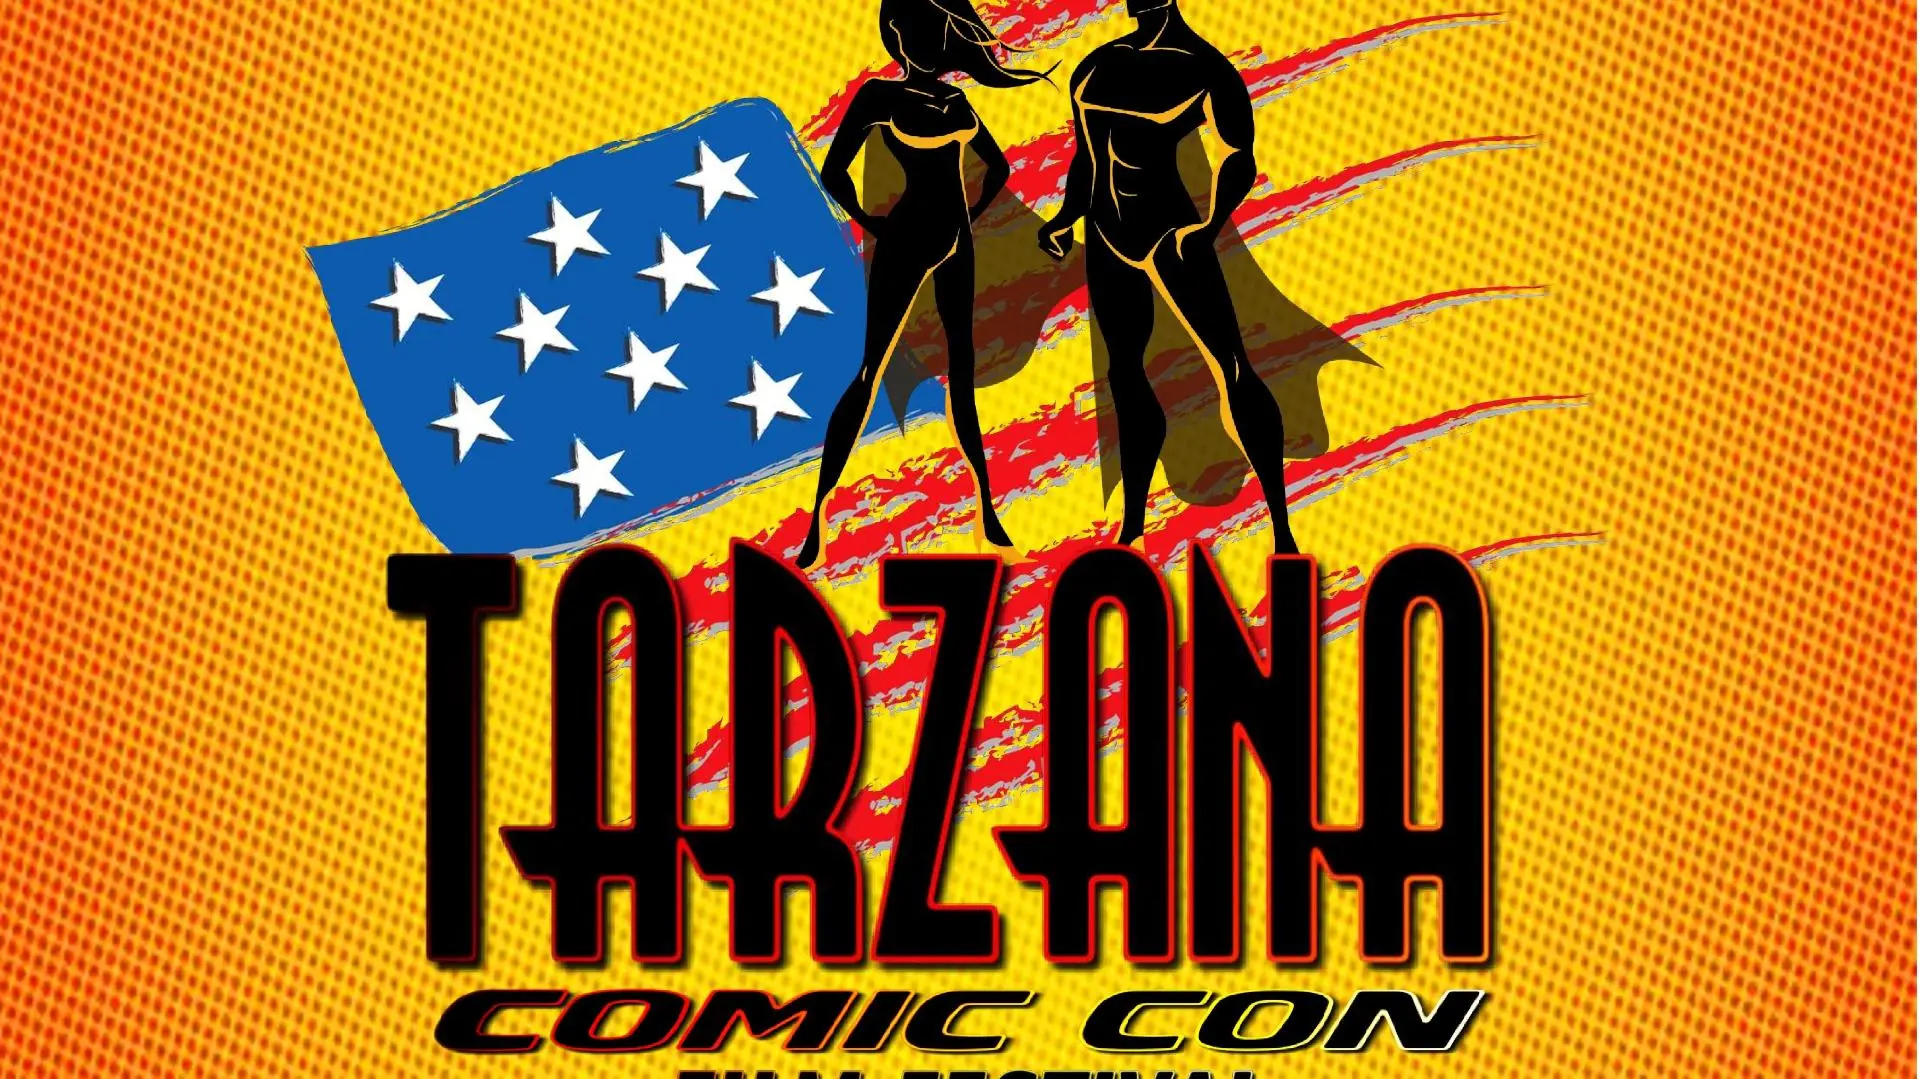 Tarzana Comic Con & Film Festival_peliplat